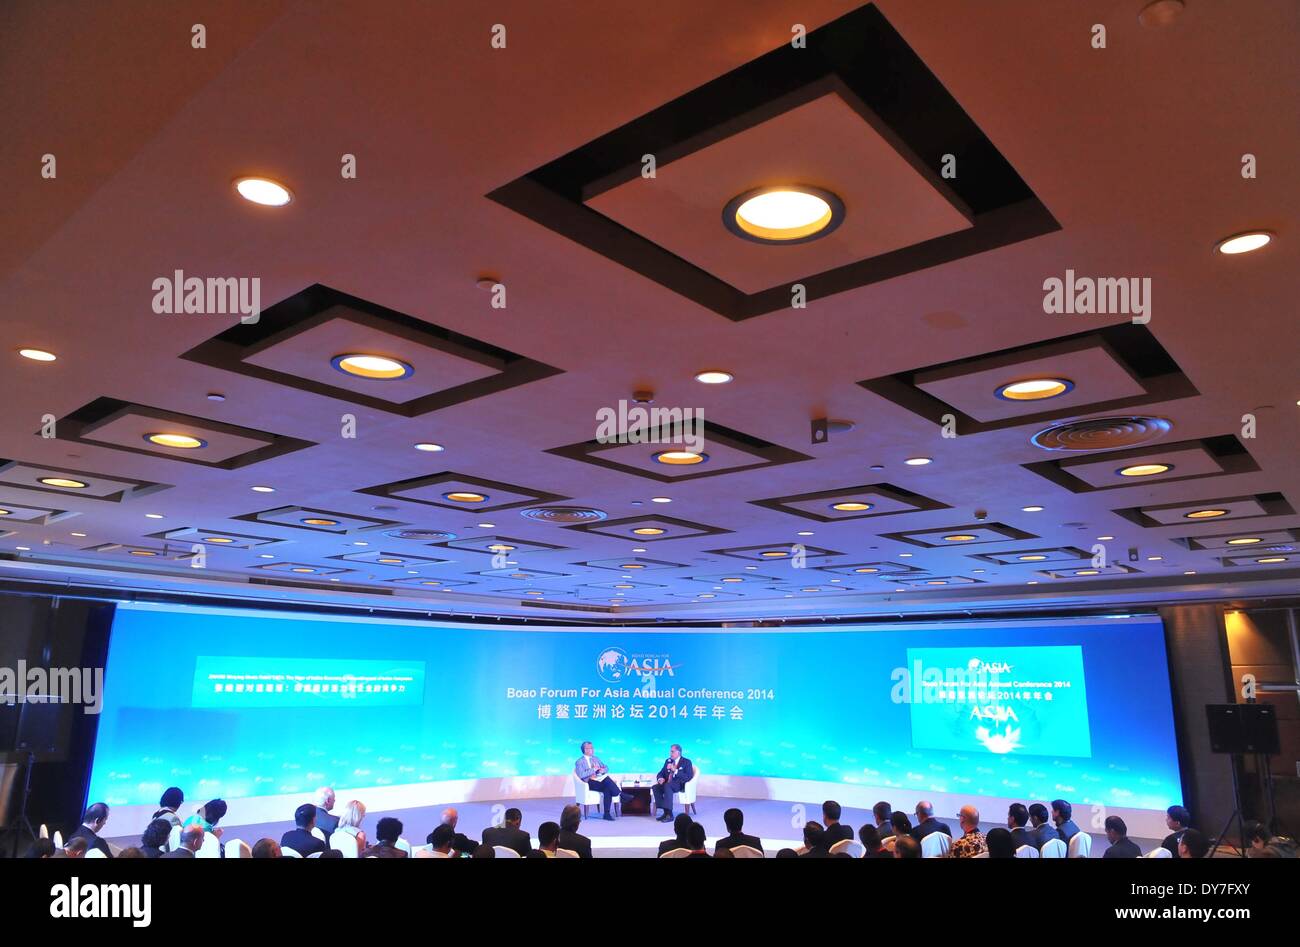 La Chine, la province de Hainan. Apr 9, 2014. Zhang Weiying (L), de l'économie de l'Université de Pékin, professior et Ratan Tata, président émérite de l'indien Tata Sons Ltd., assister à la boîte de dialogue de "La vigueur de l'économie indienne et compétitivité des entreprises indiennes au cours des le Forum de Boao pour l'Asie (BFA) conférence annuelle 2014 en Chine du sud, province de Hainan, le 9 avril 2014. © Chen Yehua/Xinhua/Alamy Live News Banque D'Images